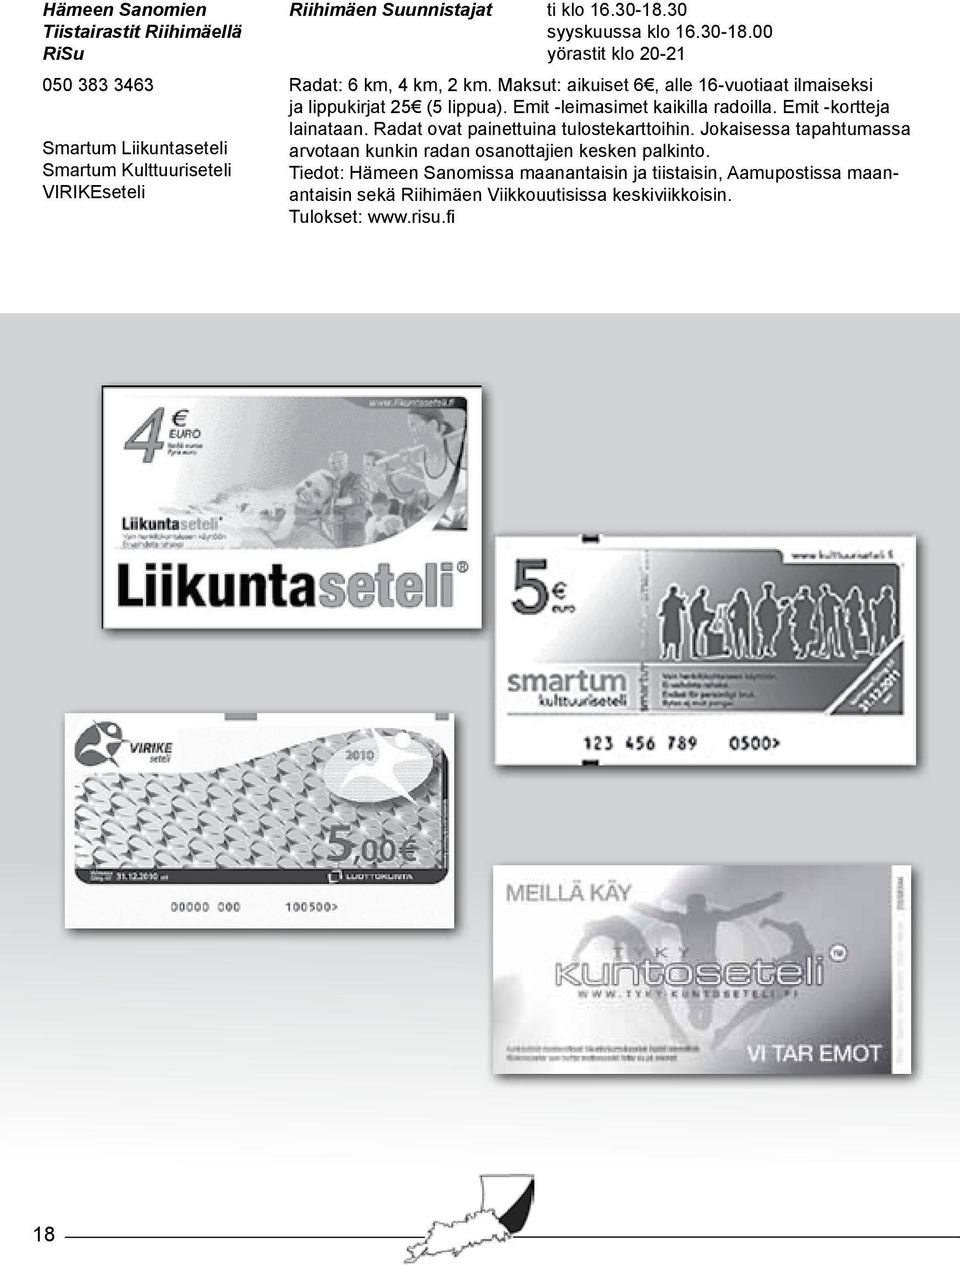 Emit -kortteja Smartum Liikuntaseteli Smartum Kulttuuriseteli VIRIKEseteli lainataan. Radat ovat painettuina tulostekarttoihin.